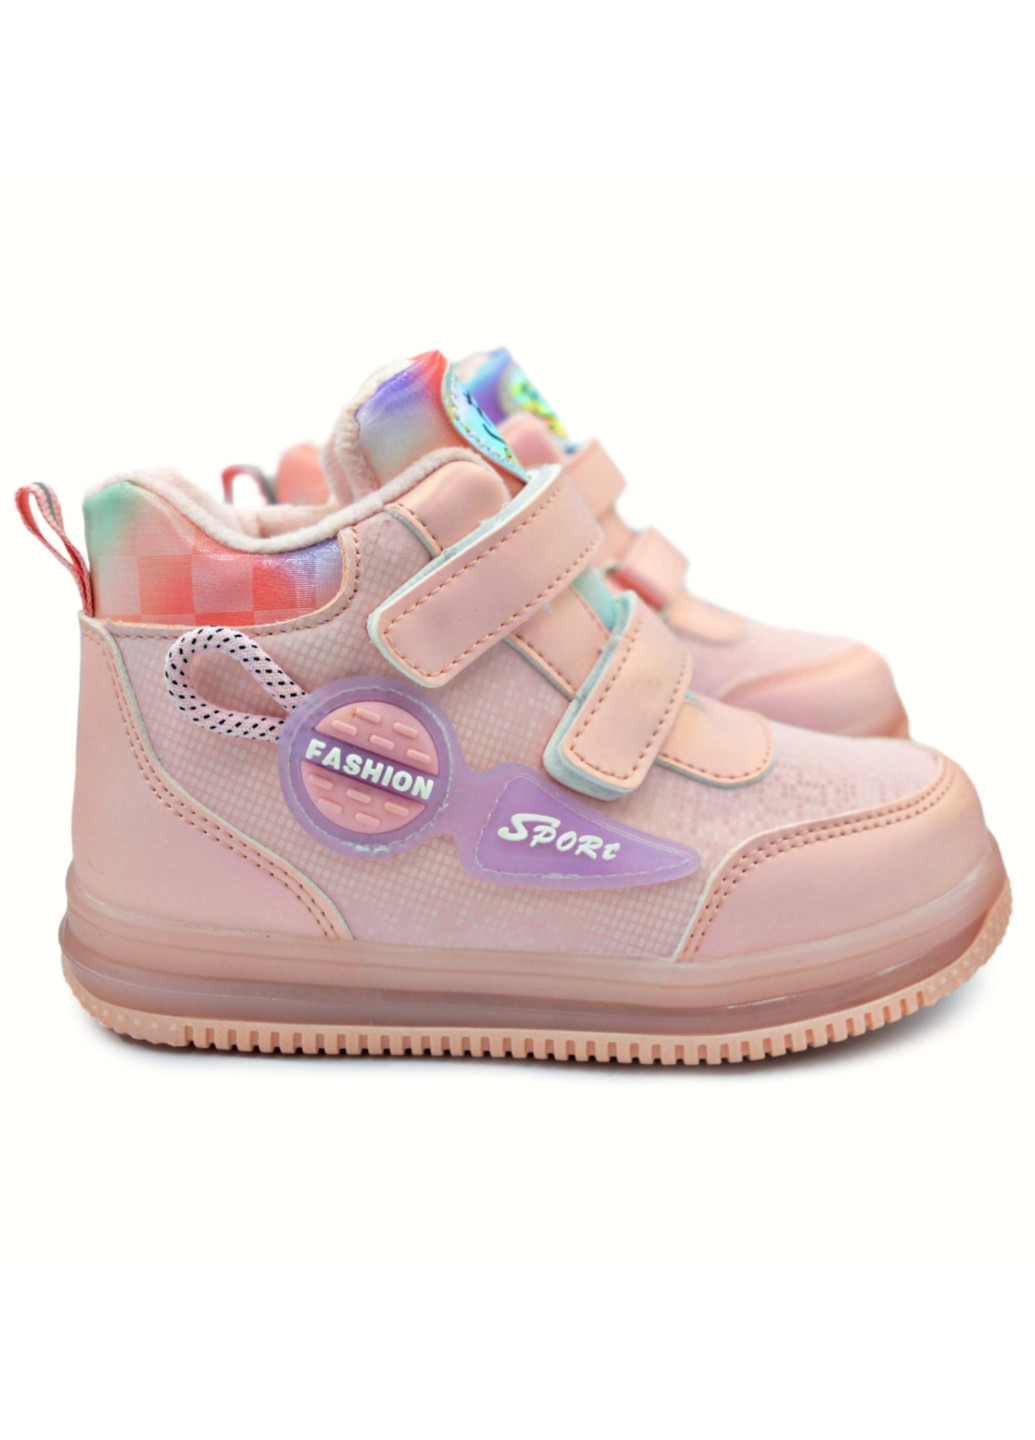 Розовые кэжуал осенние демисезонная обувь для девочки, ботинки, сапожки,, р.21-26 Том.М